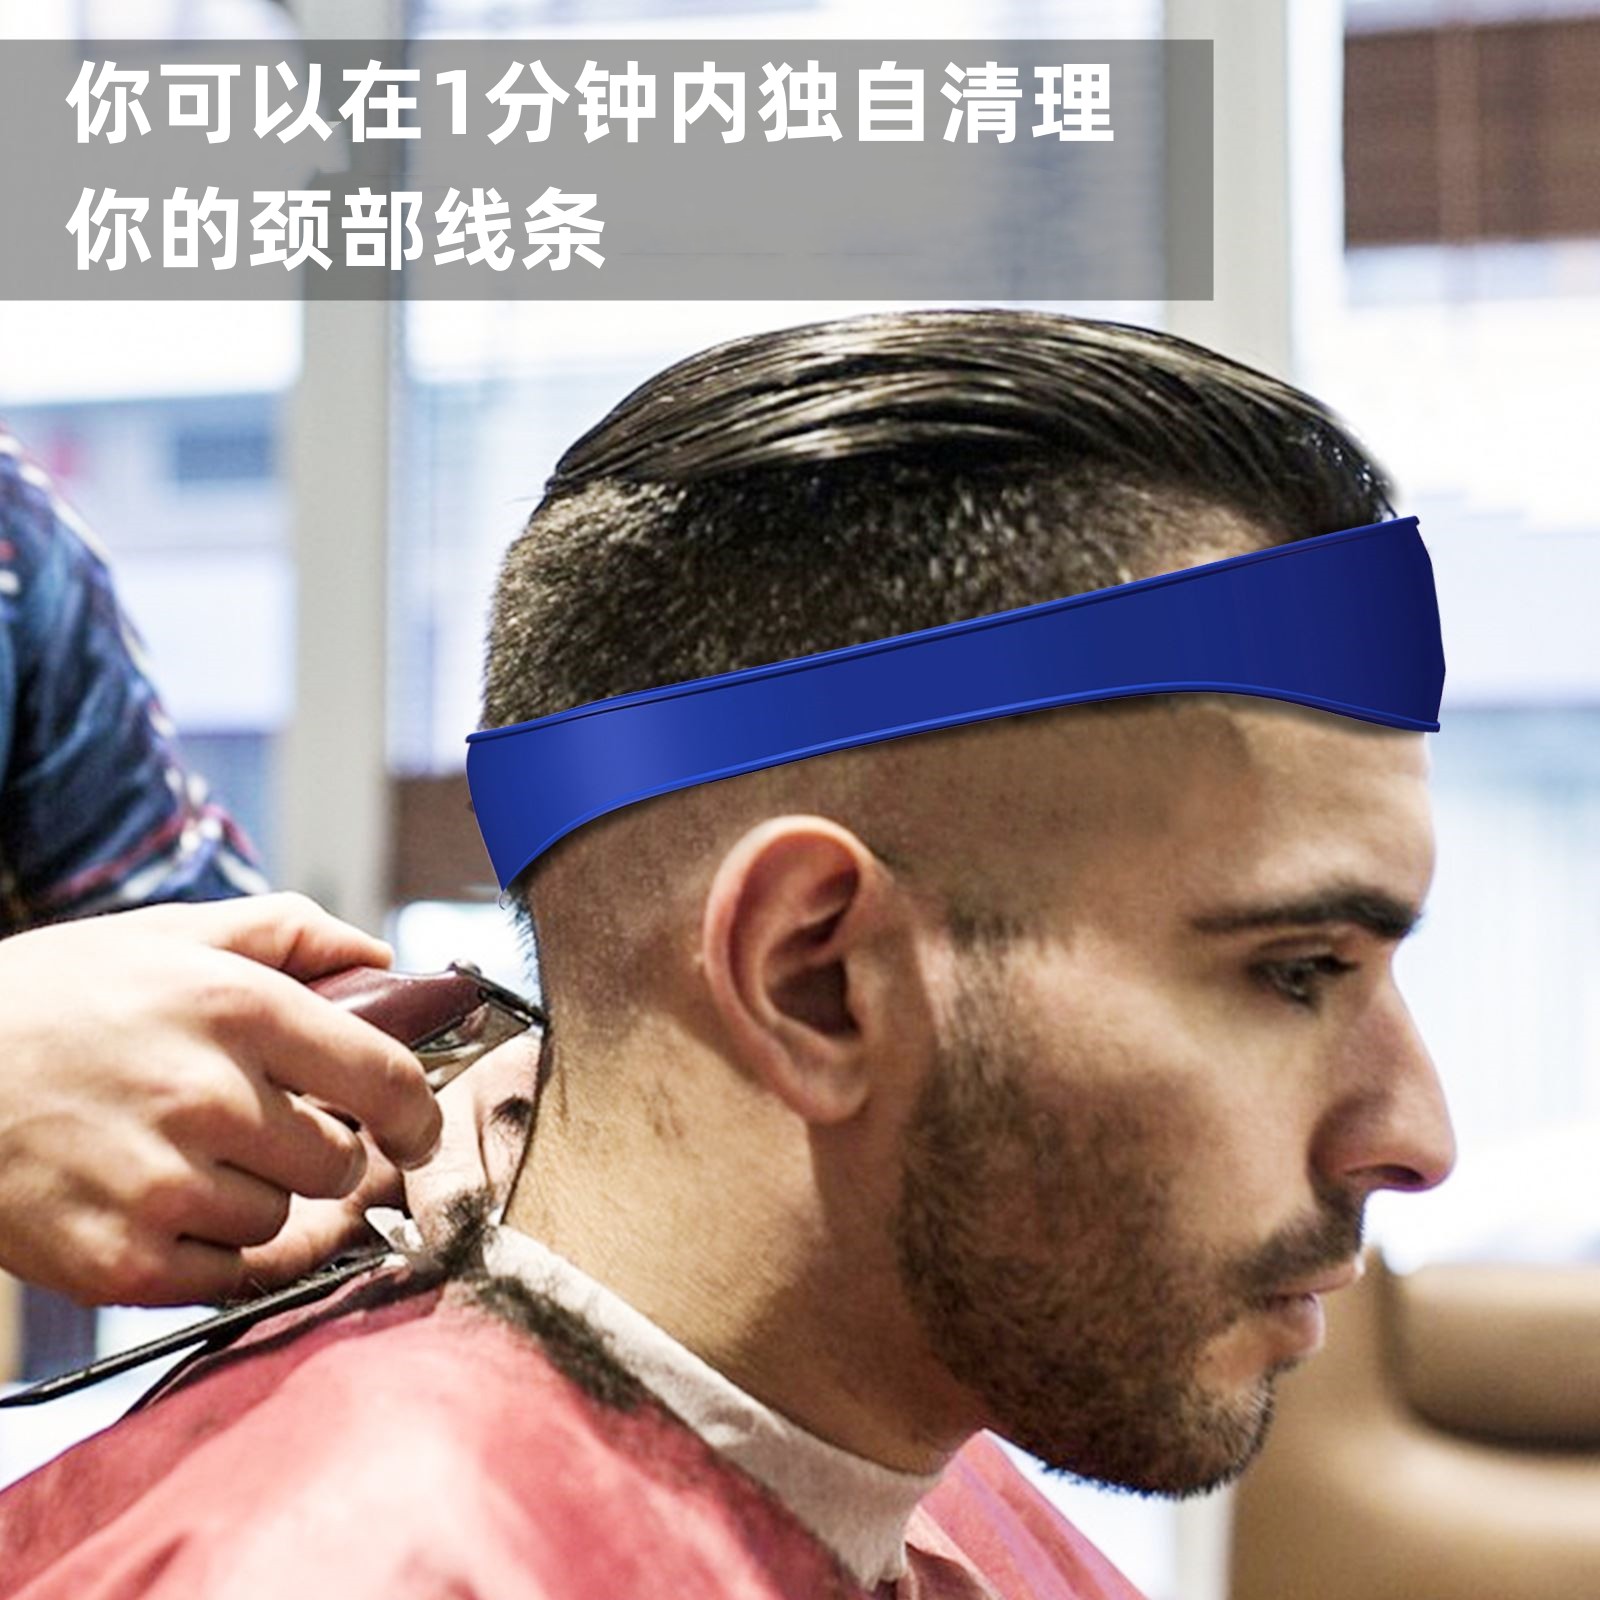 【厂家直销】男士自助理发器 DIY弧形硅胶理发带剪理发领口剃须